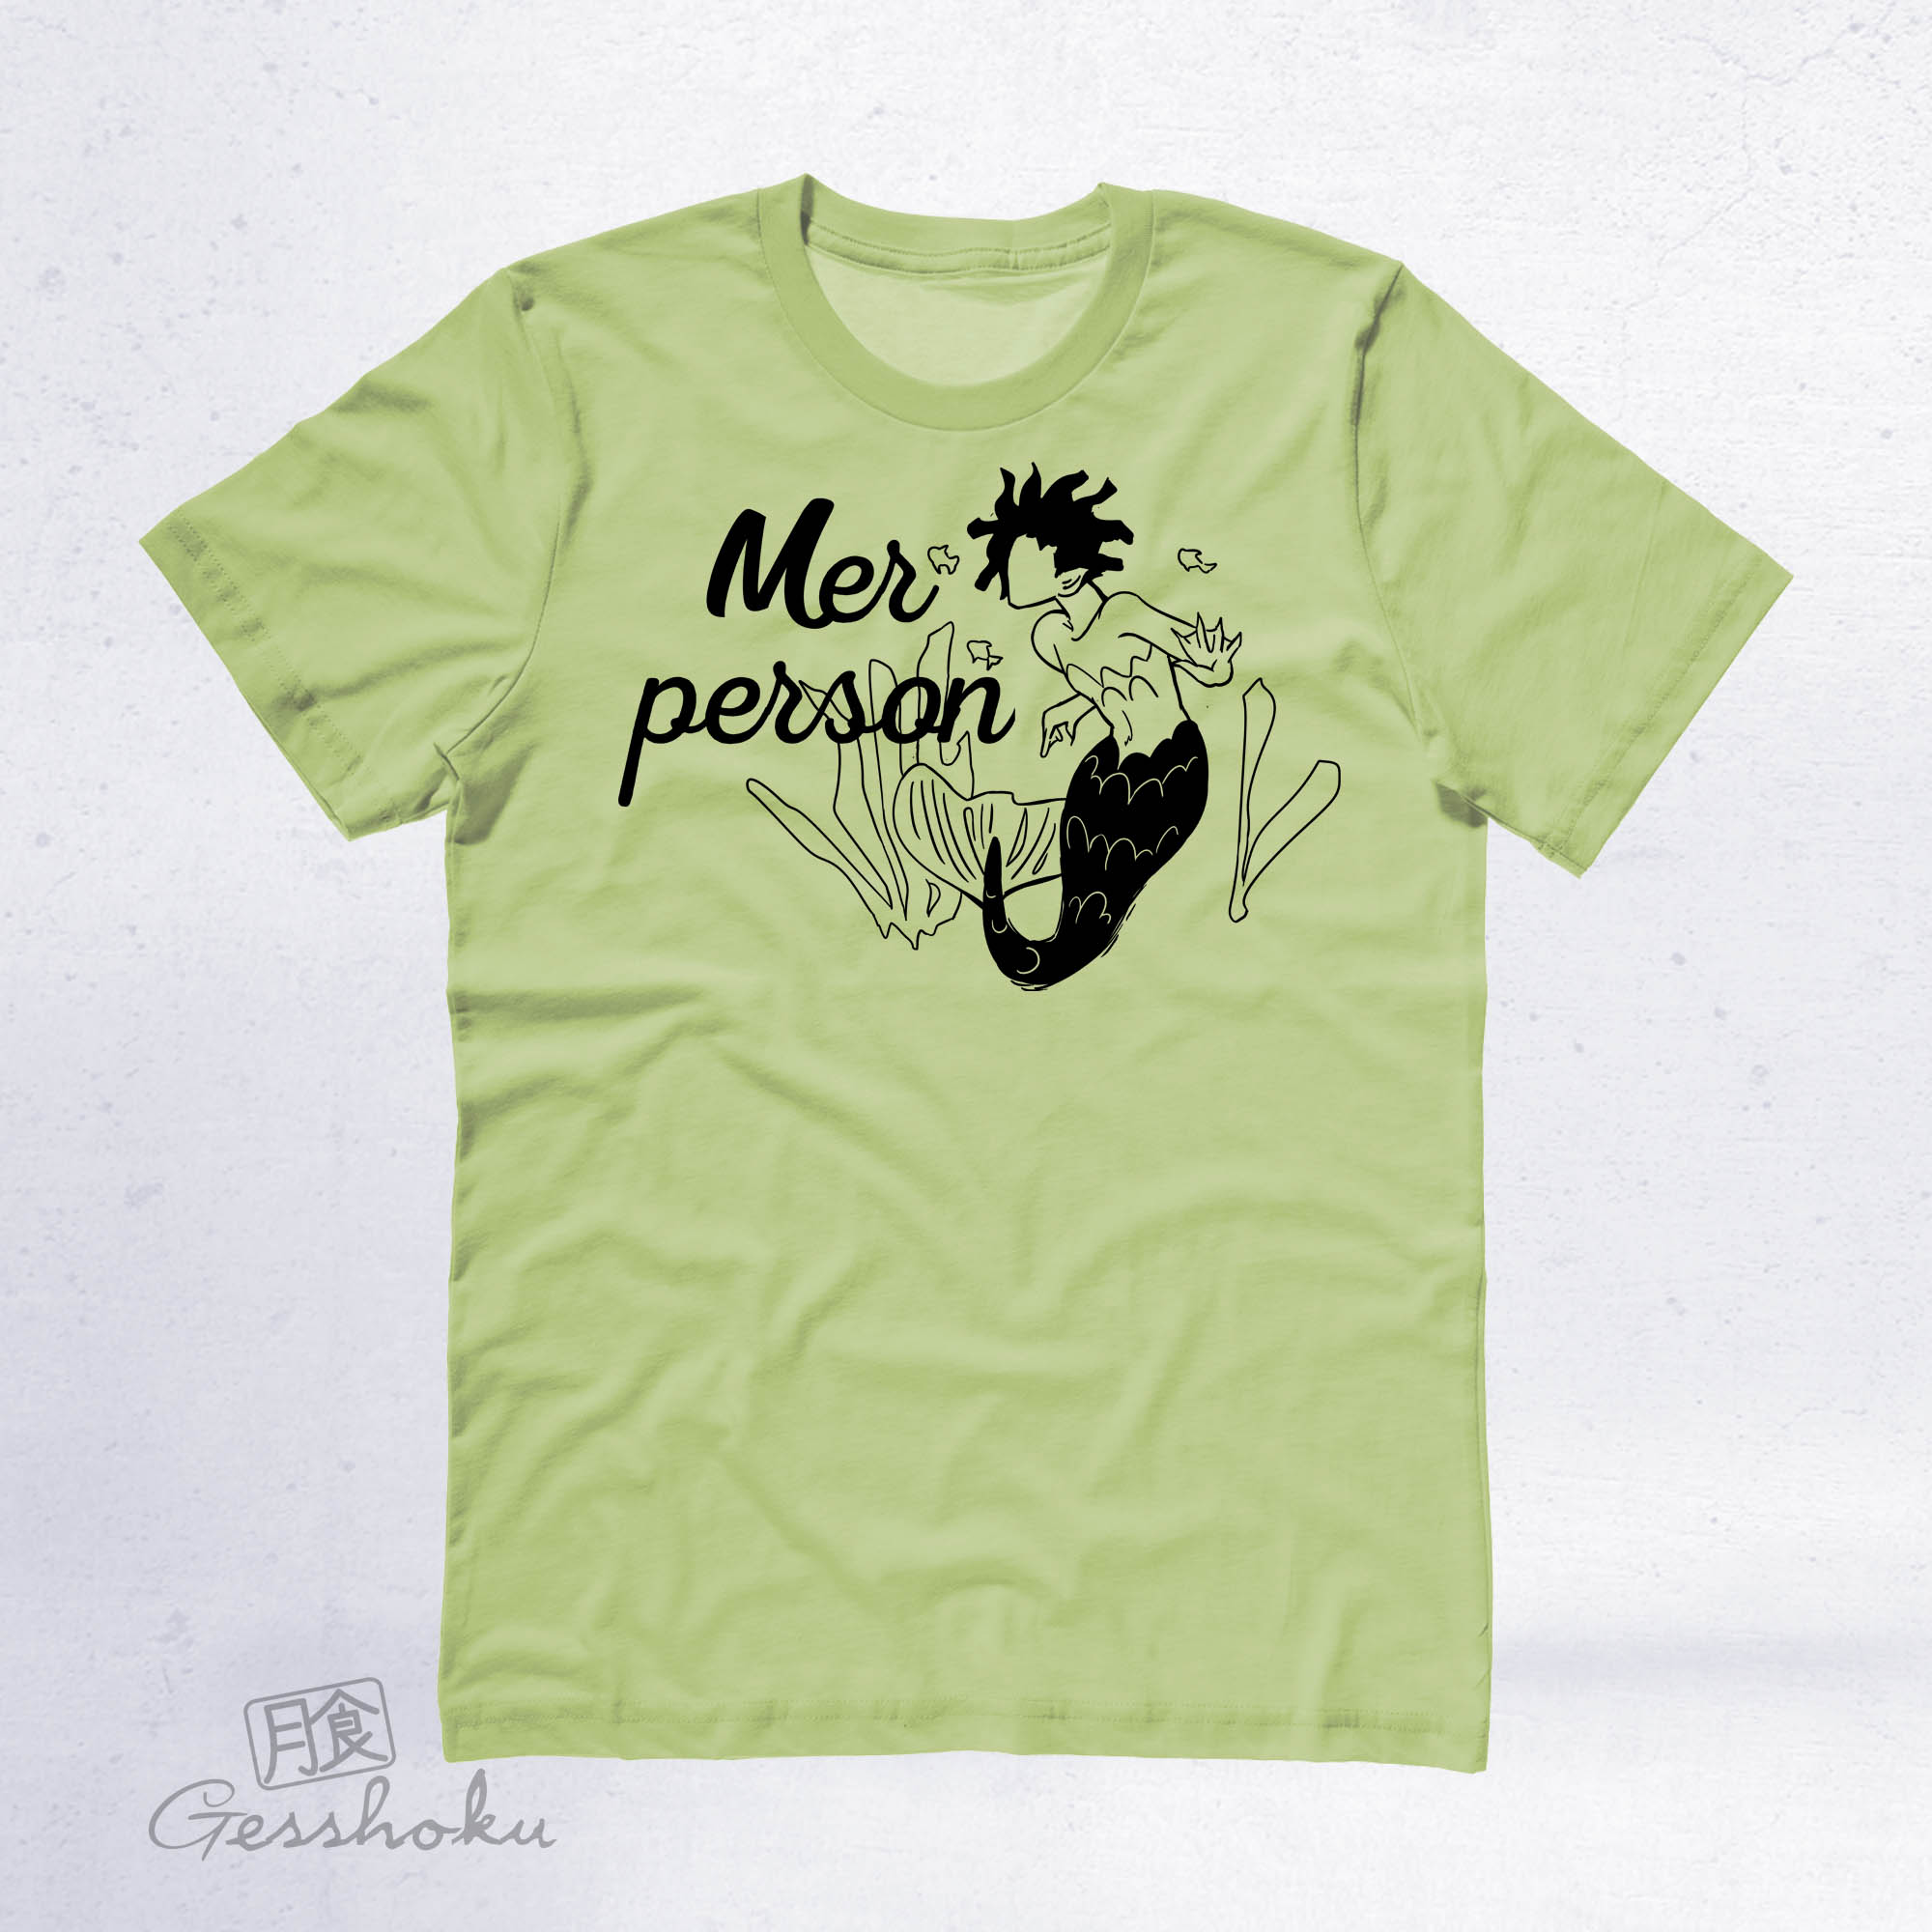 Merperson T-shirt - Green